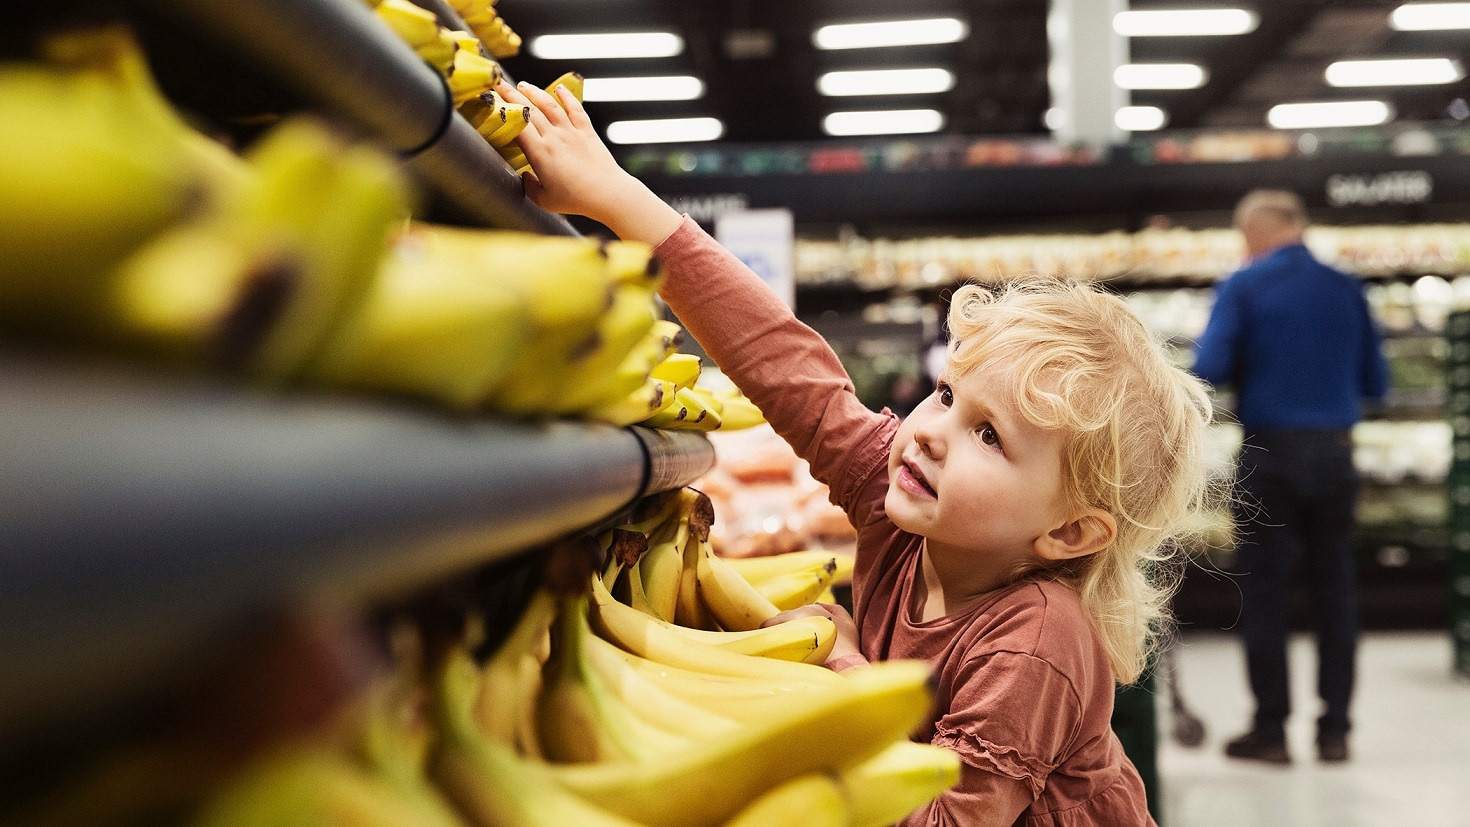 Lille pige rækker ud efter en øko-banan i dagligvarebutik.